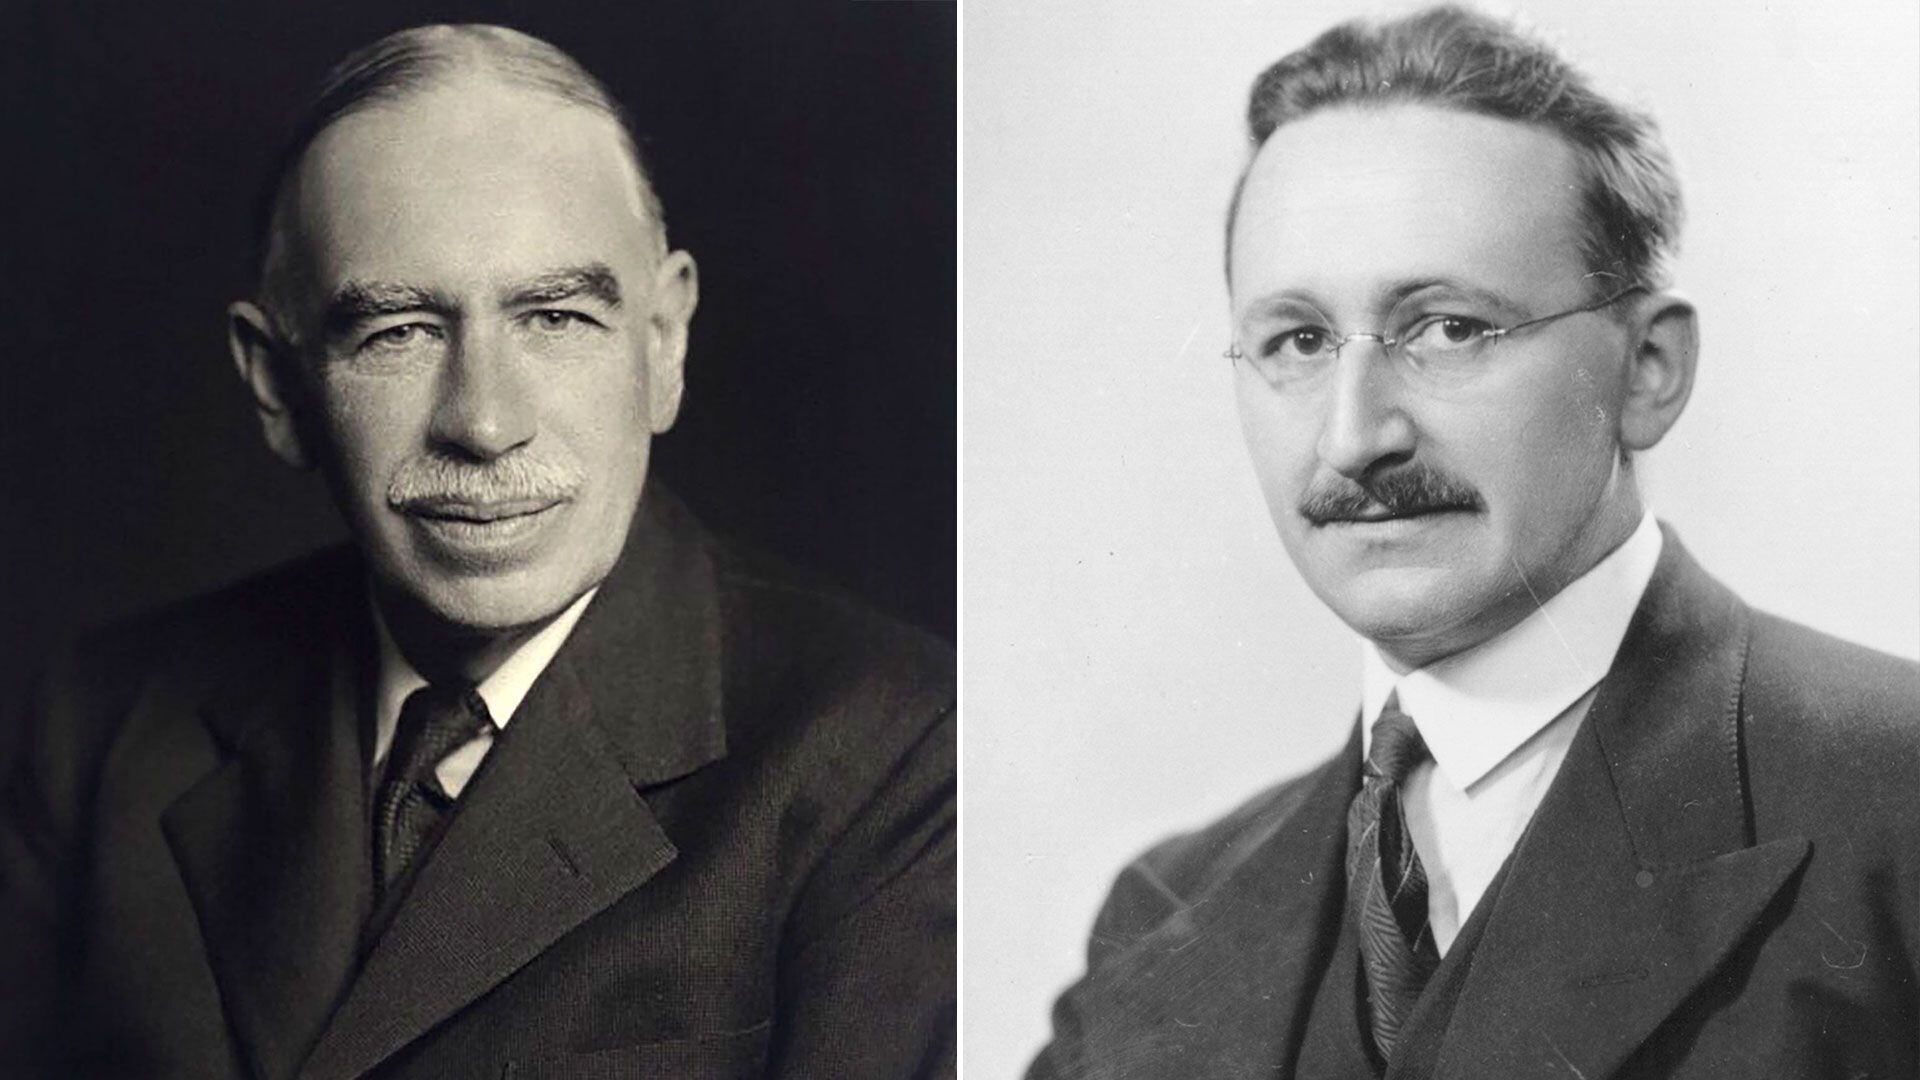 Keynes y Hayek